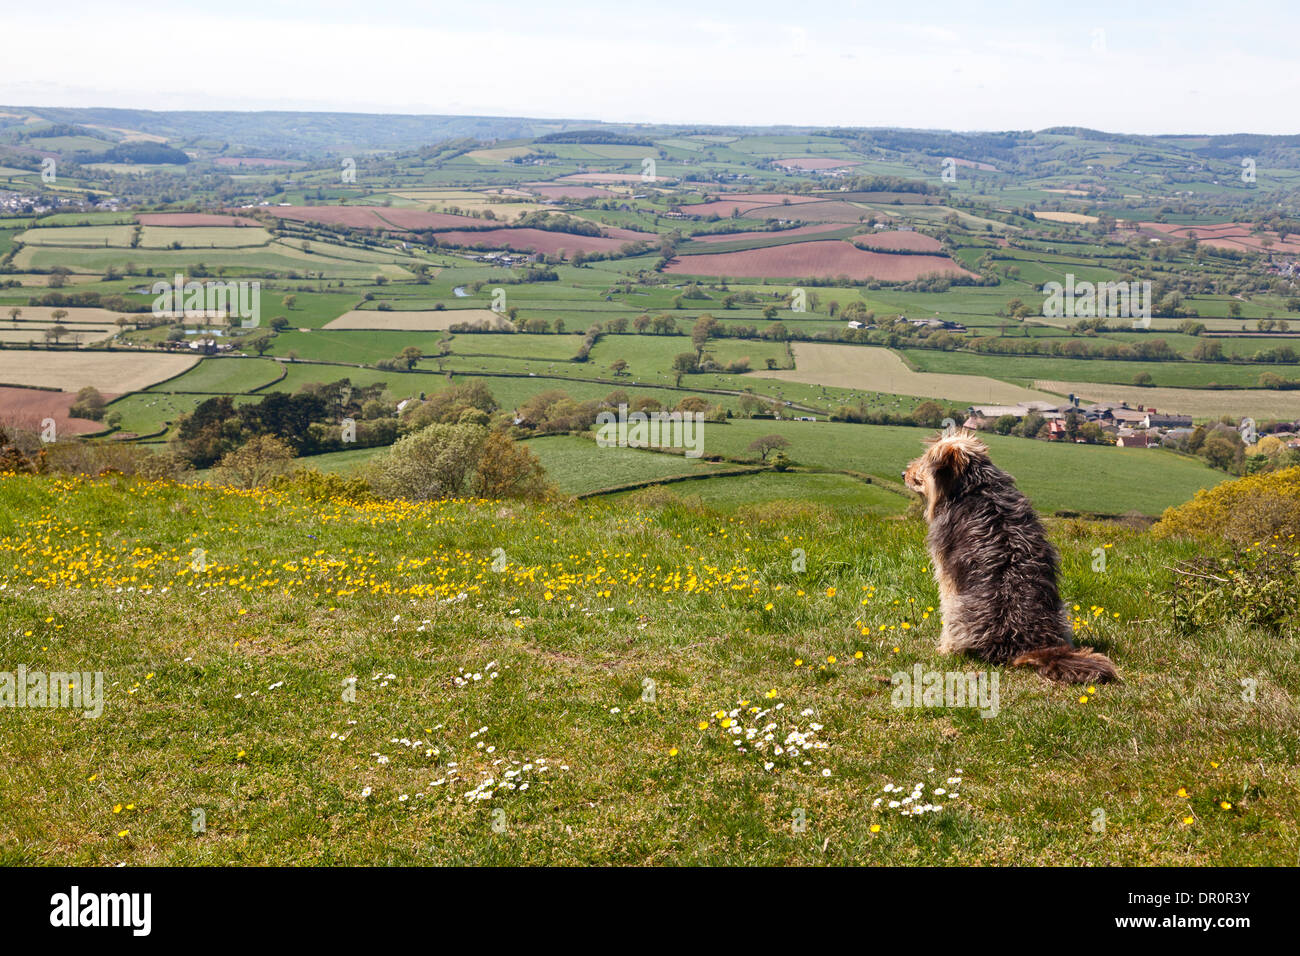 Dog sitting on hillside overlooking the Axe Valley, Musbury, Devon Stock Photo